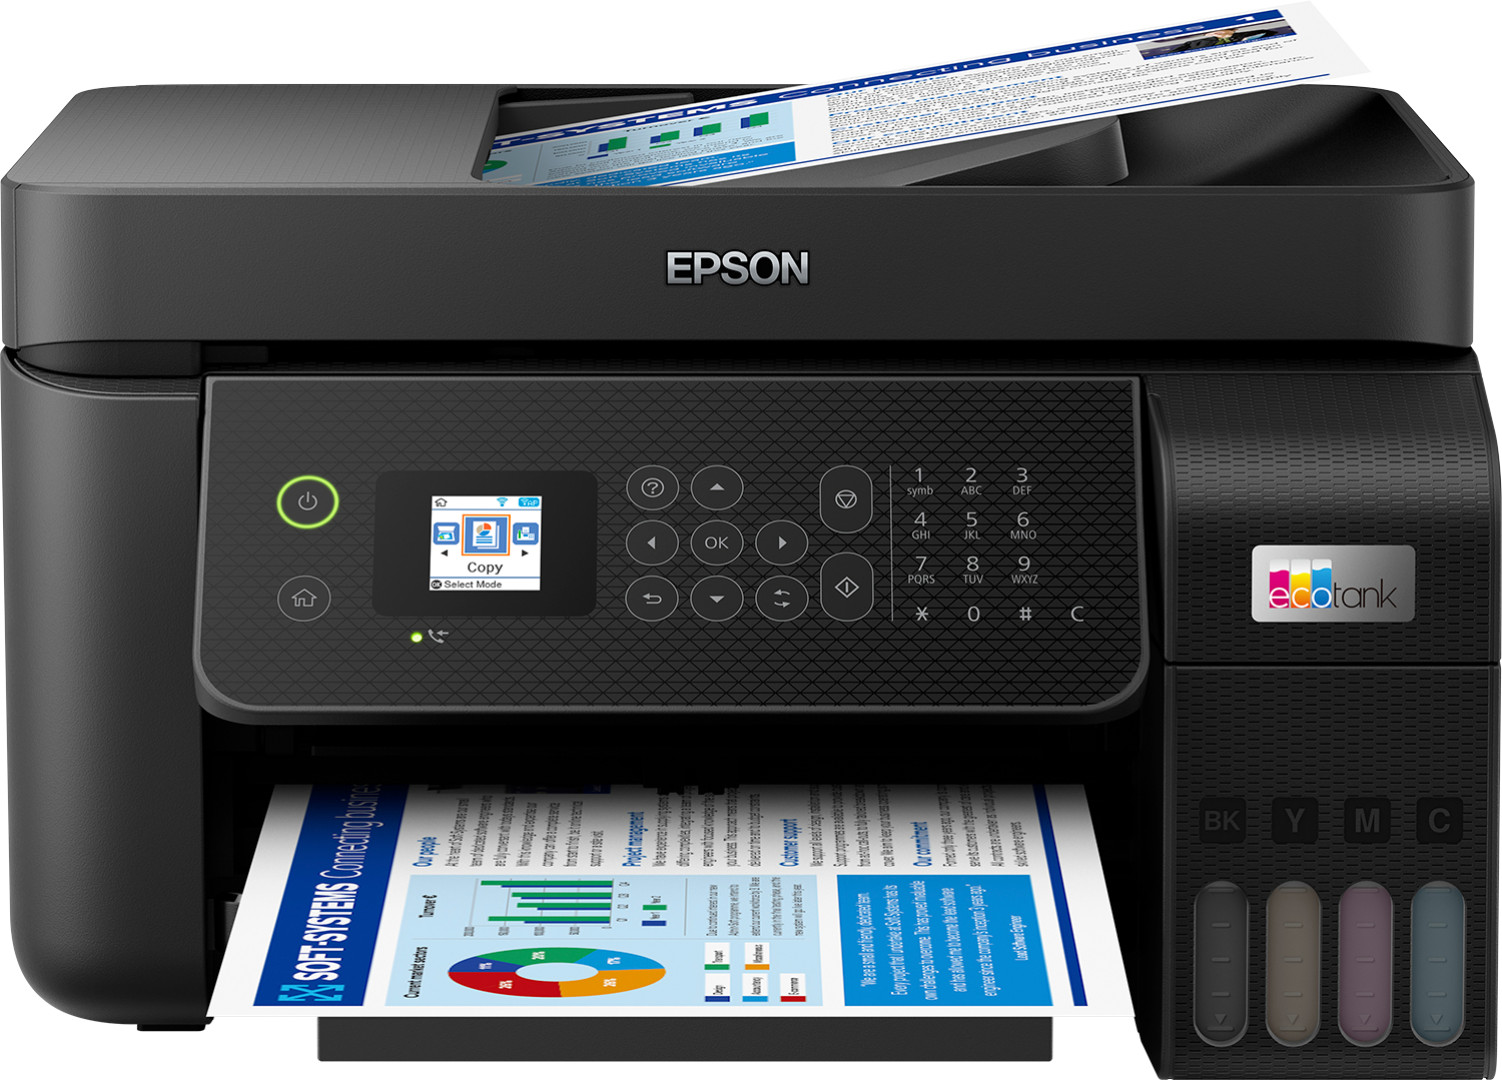 Epson EcoTank ET-4800 stampante multifunzione inkjet 4-in-1 A4, serbatoi ricaricabili alta capacit-, 5 flaconi inclusi pari a 14000pag B/N 5200pag colore, Wi-FI Direct, USB